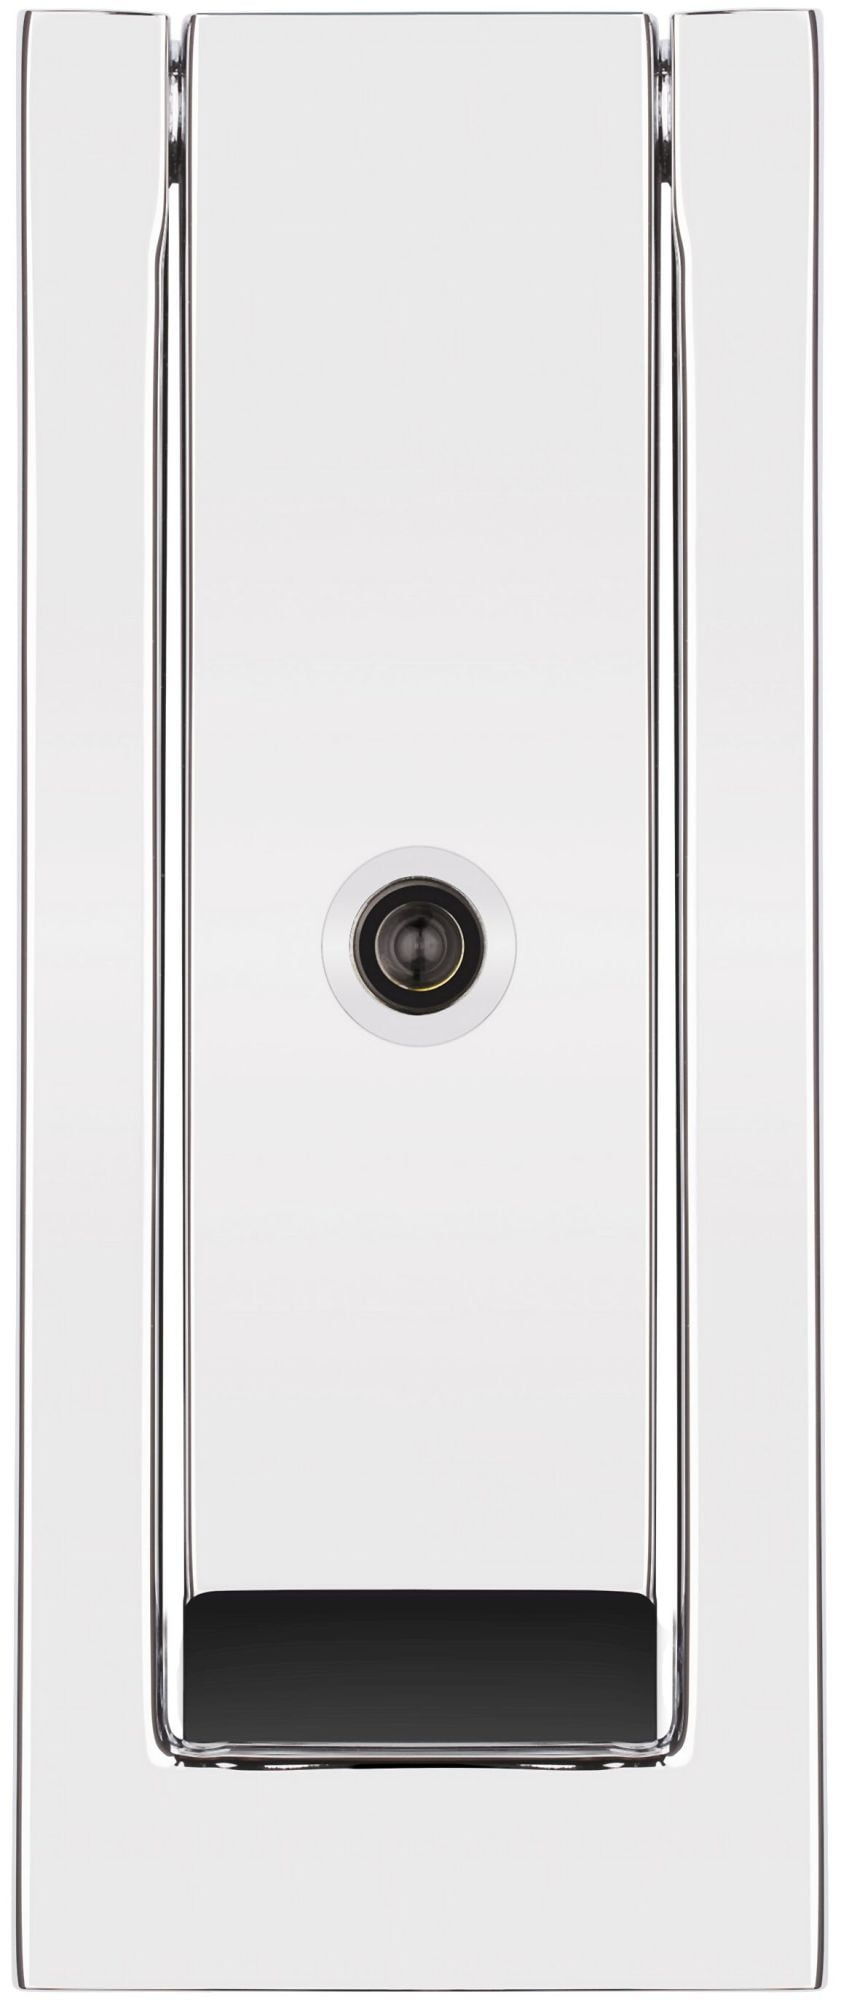 Baldwin 0185 Modern Rectangular Door Knocker Brass